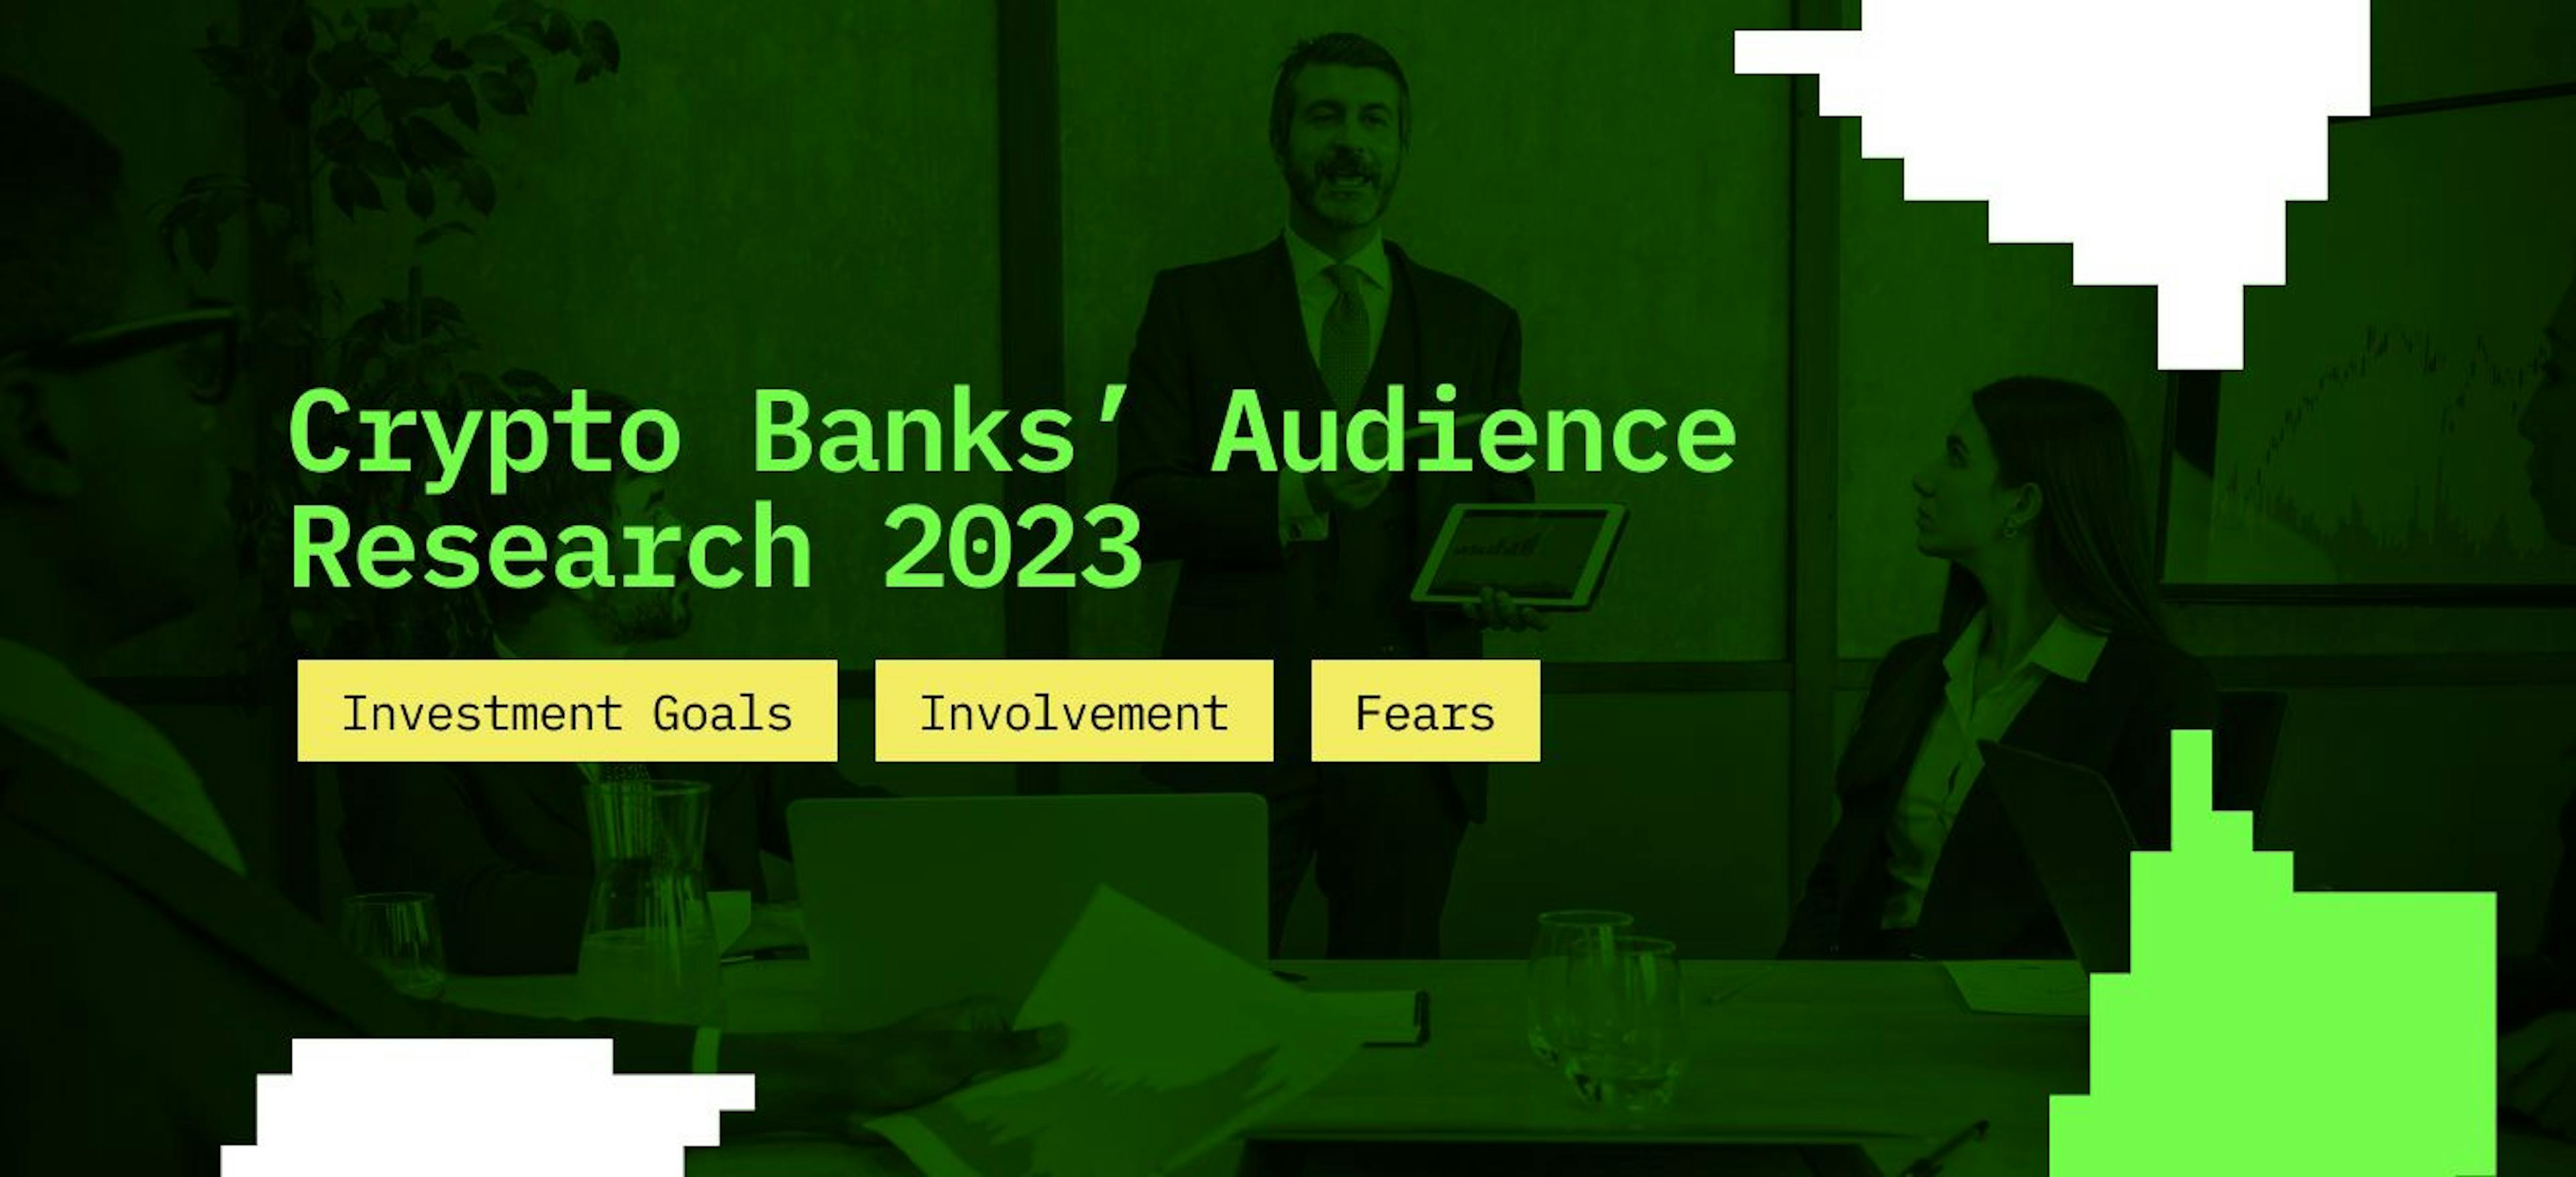 featured image - Pesquisa de audiência de bancos criptográficos 2023: metas de investimento, envolvimento e medos